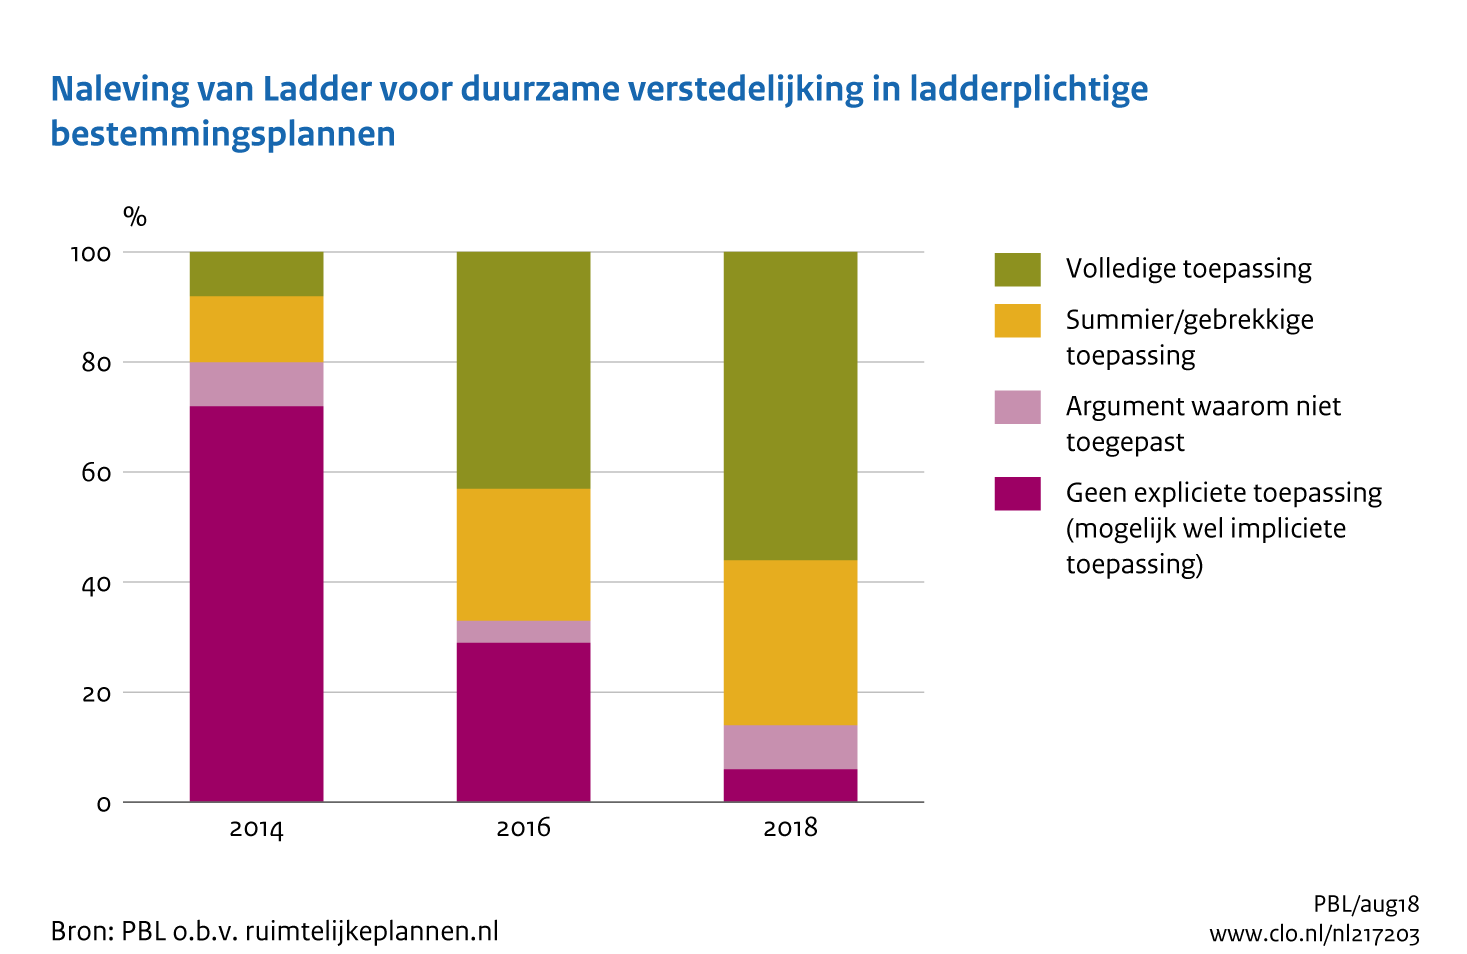 Figuur Naleving Ladder voor duurzame verstedelijking 2014-2018. In de rest van de tekst wordt deze figuur uitgebreider uitgelegd.